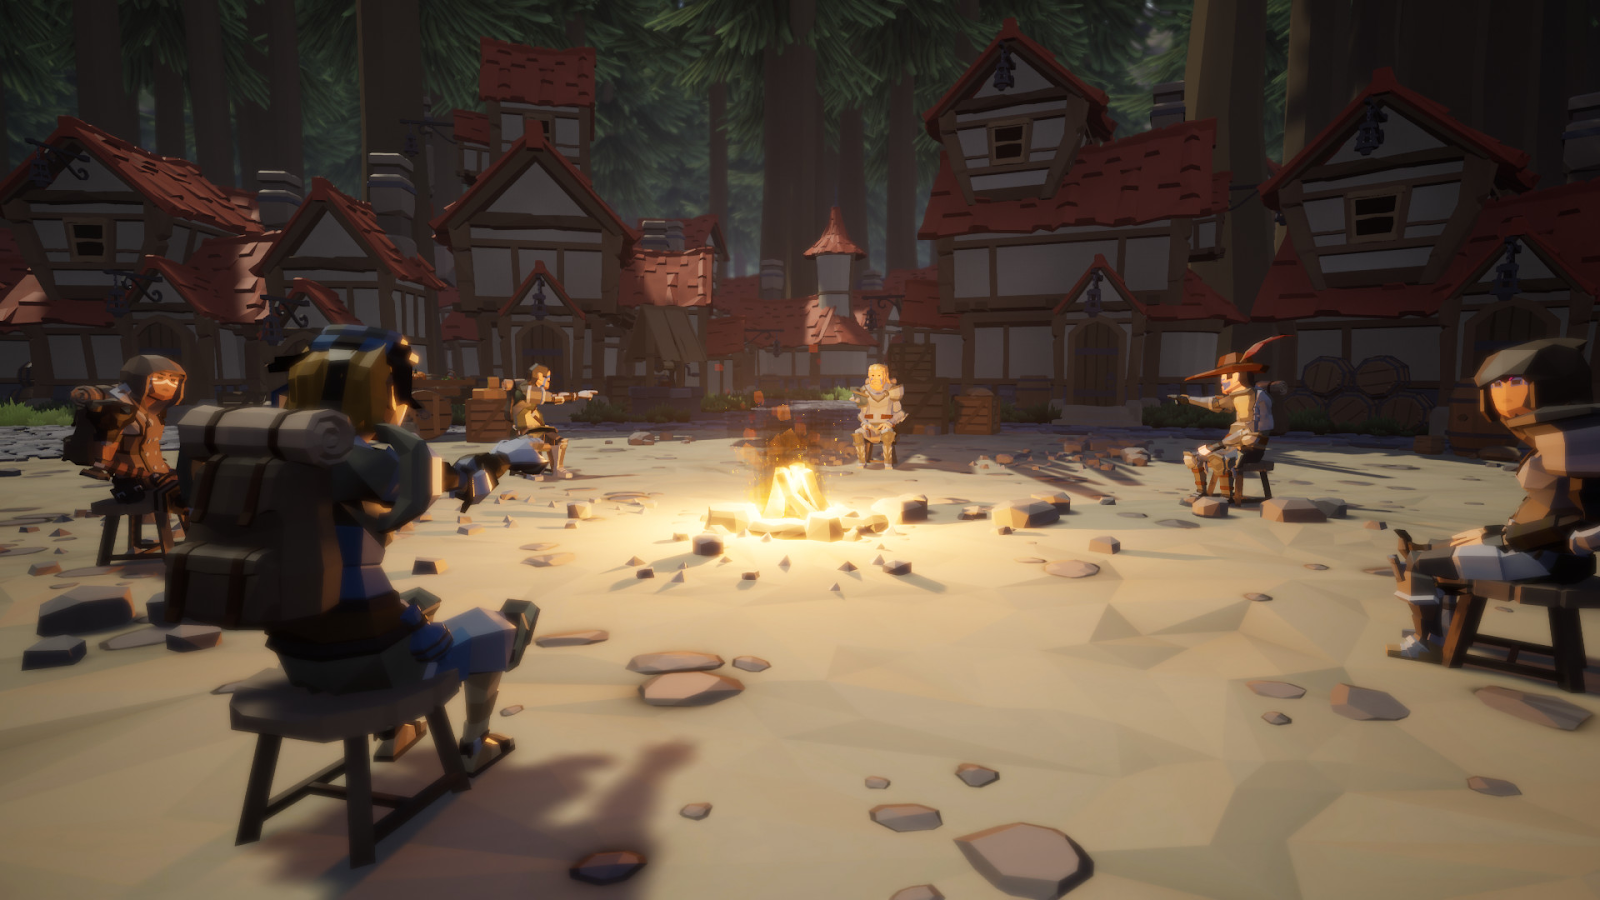 Giao diện ban đầu của game ma sói trực tuyến Agrou là hình ảnh một nhóm người đang ngồi quanh đống lửa trại